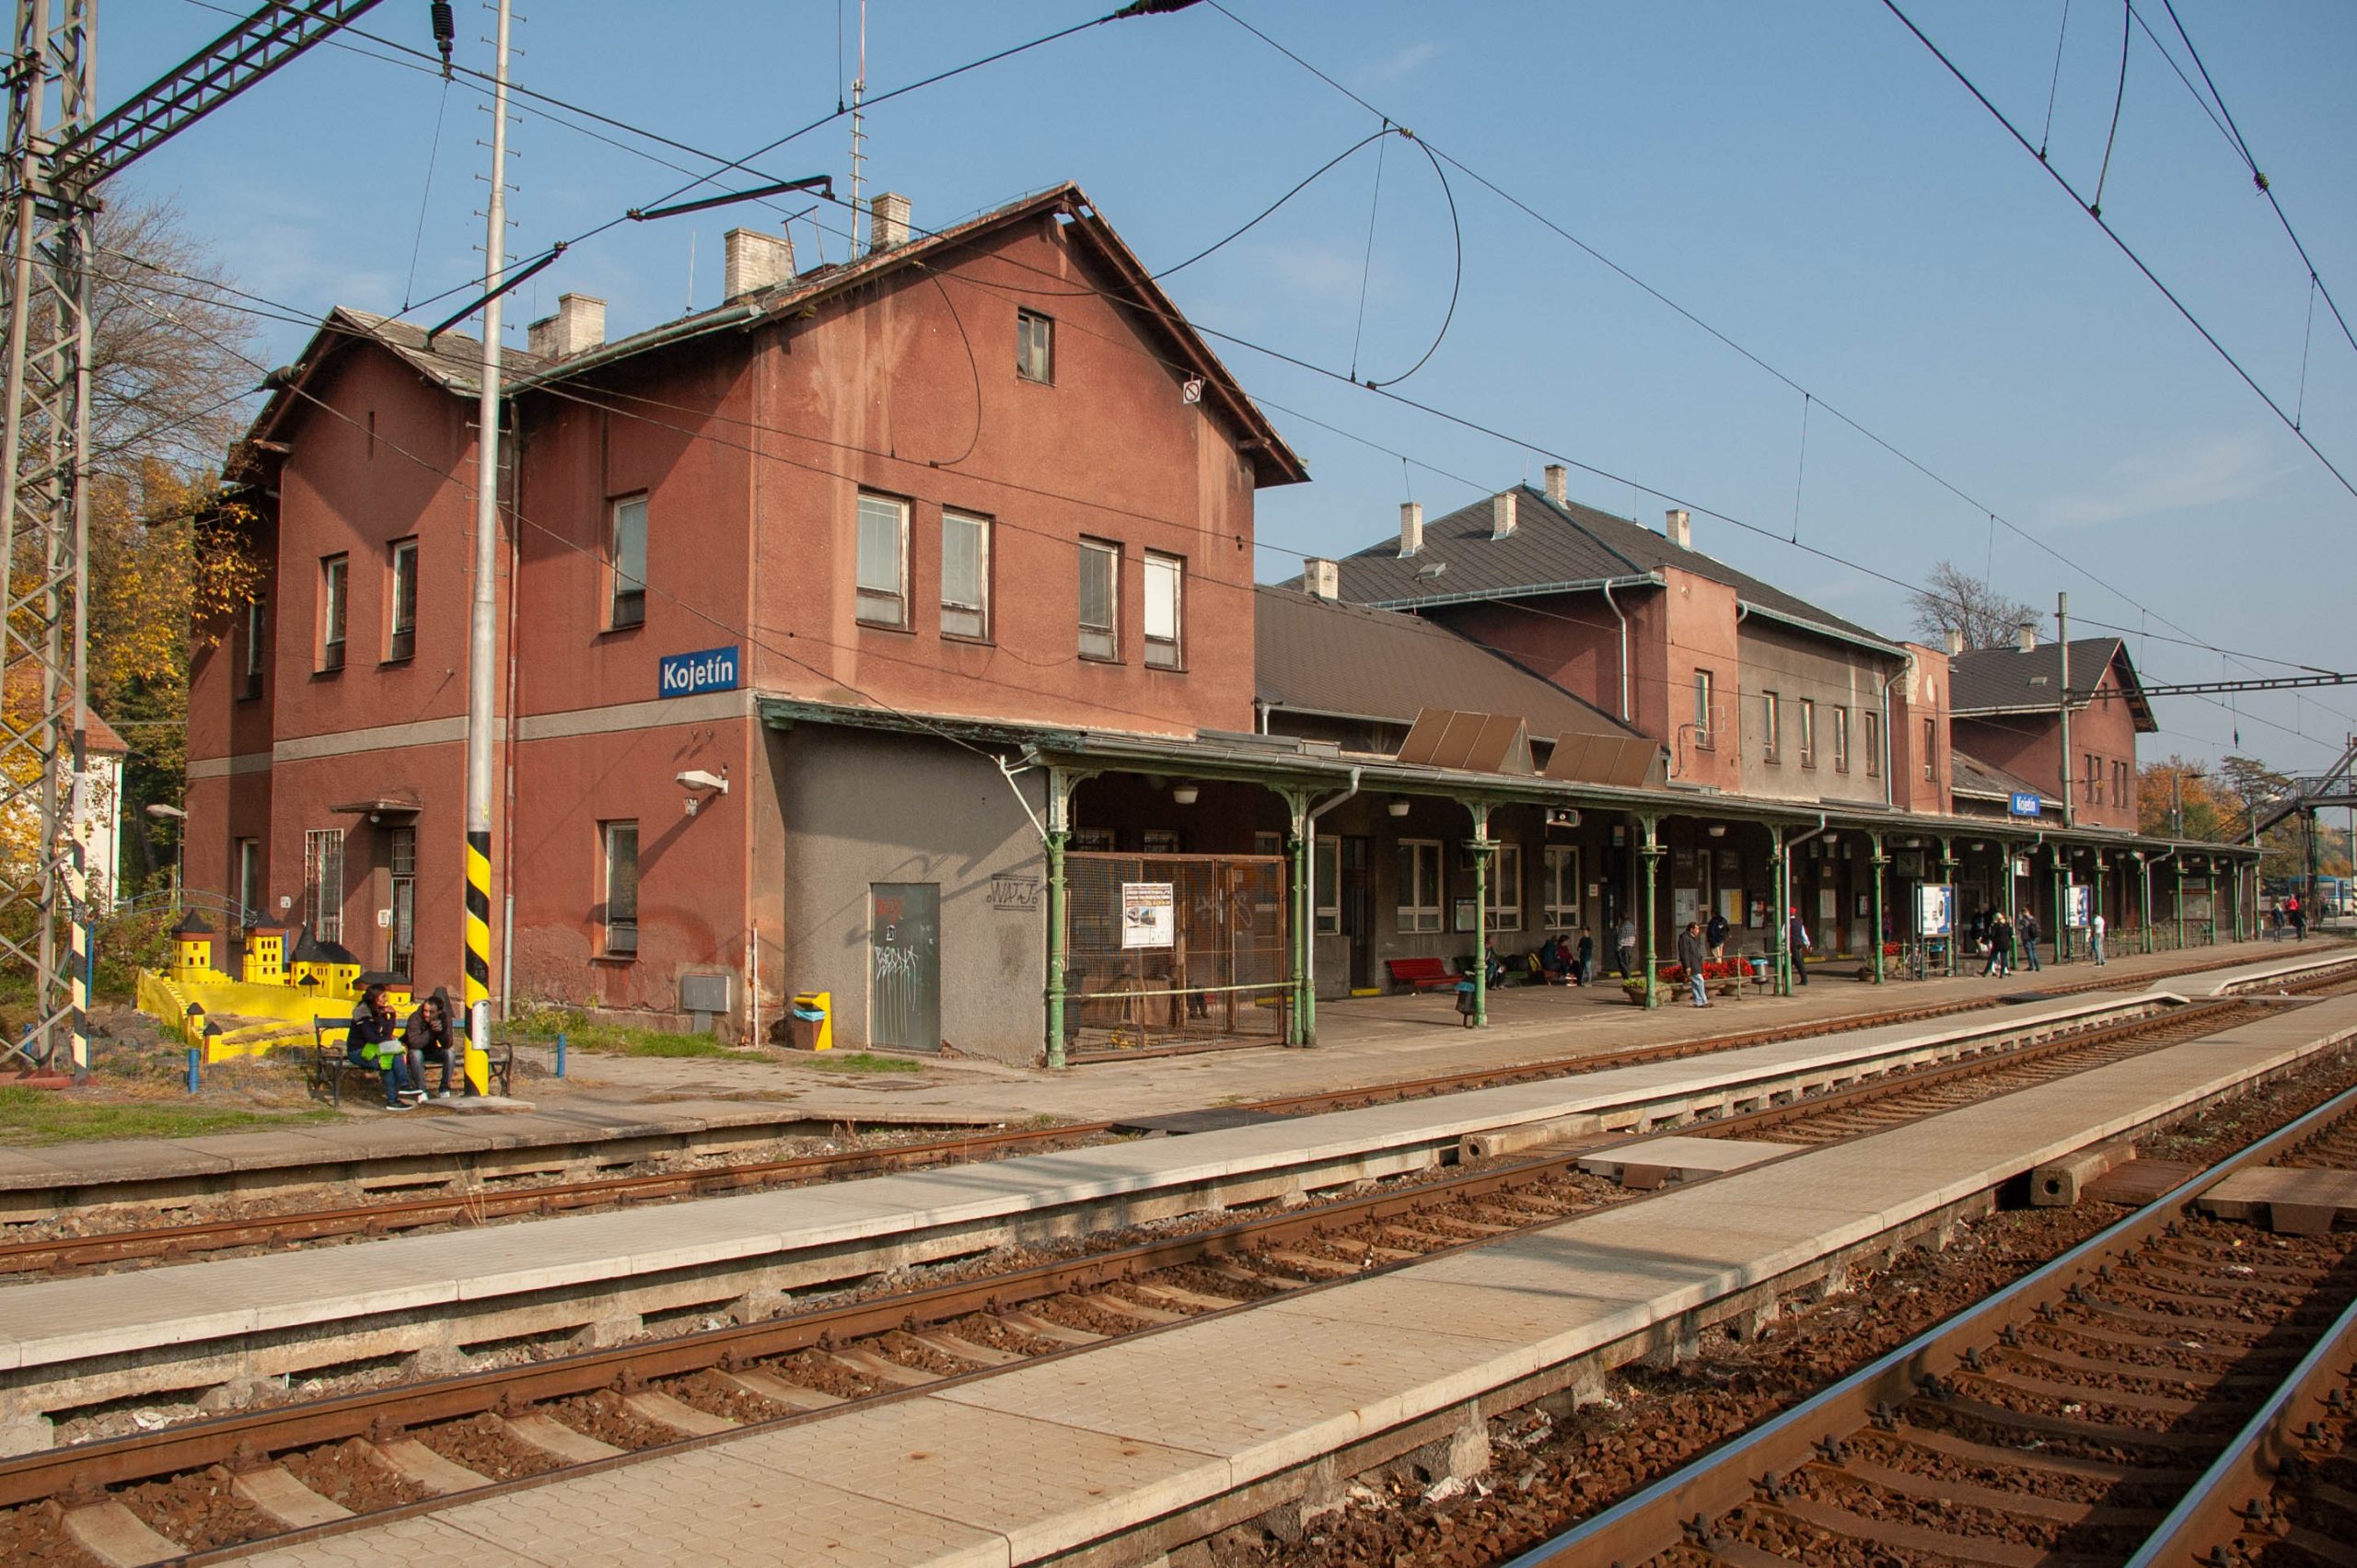 Železniční stanice Kojetín. Foto: MIGORMCZ – Vlastní dílo, CC BY-SA 4.0, https://commons.wikimedia.org/w/index.php?curid=75158781